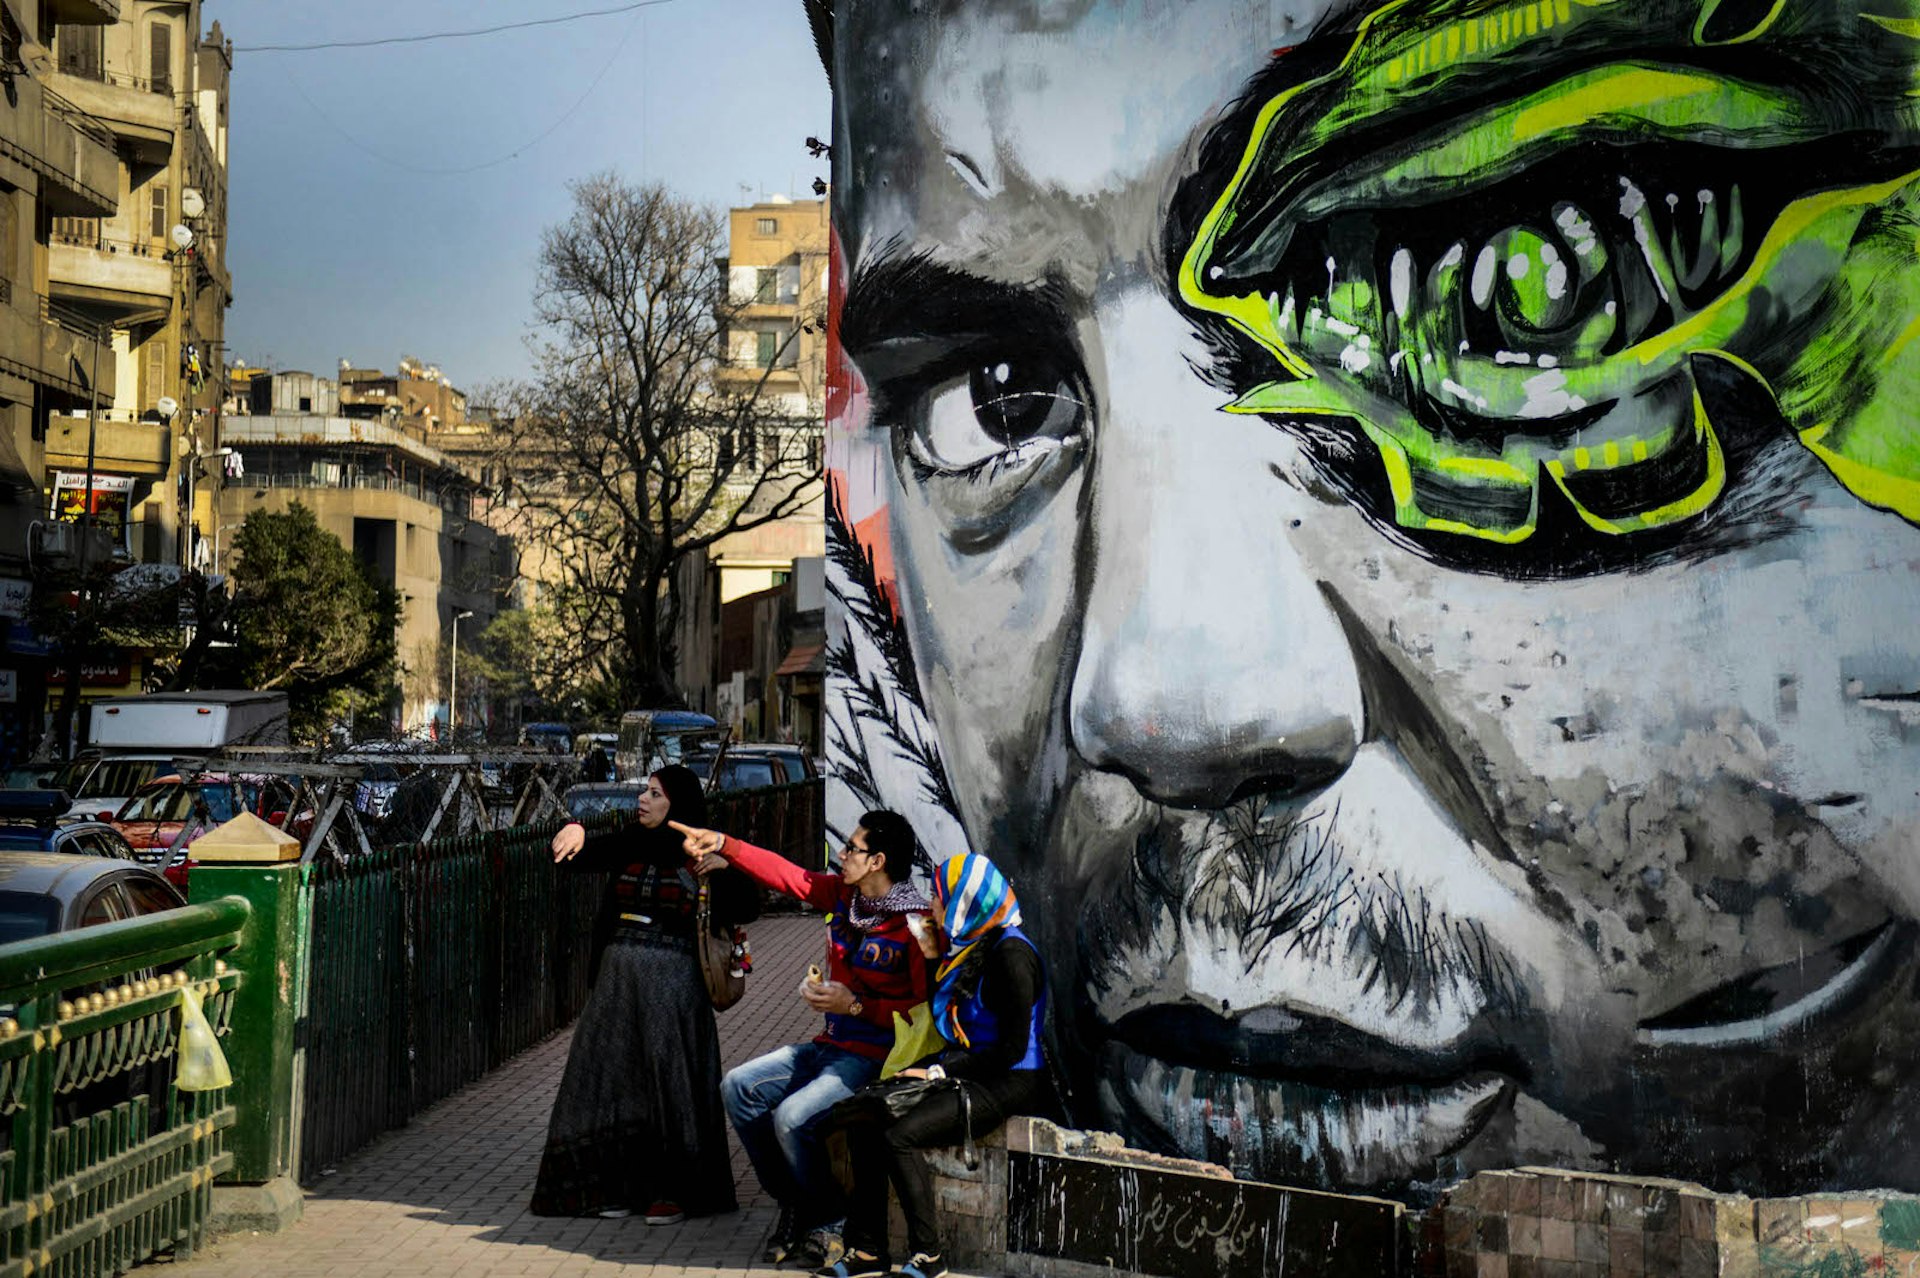 Revolutionary graffiti in Cairo, Egypt. Image by Mohamed Hossam / Anadolu Agency / Getty Images